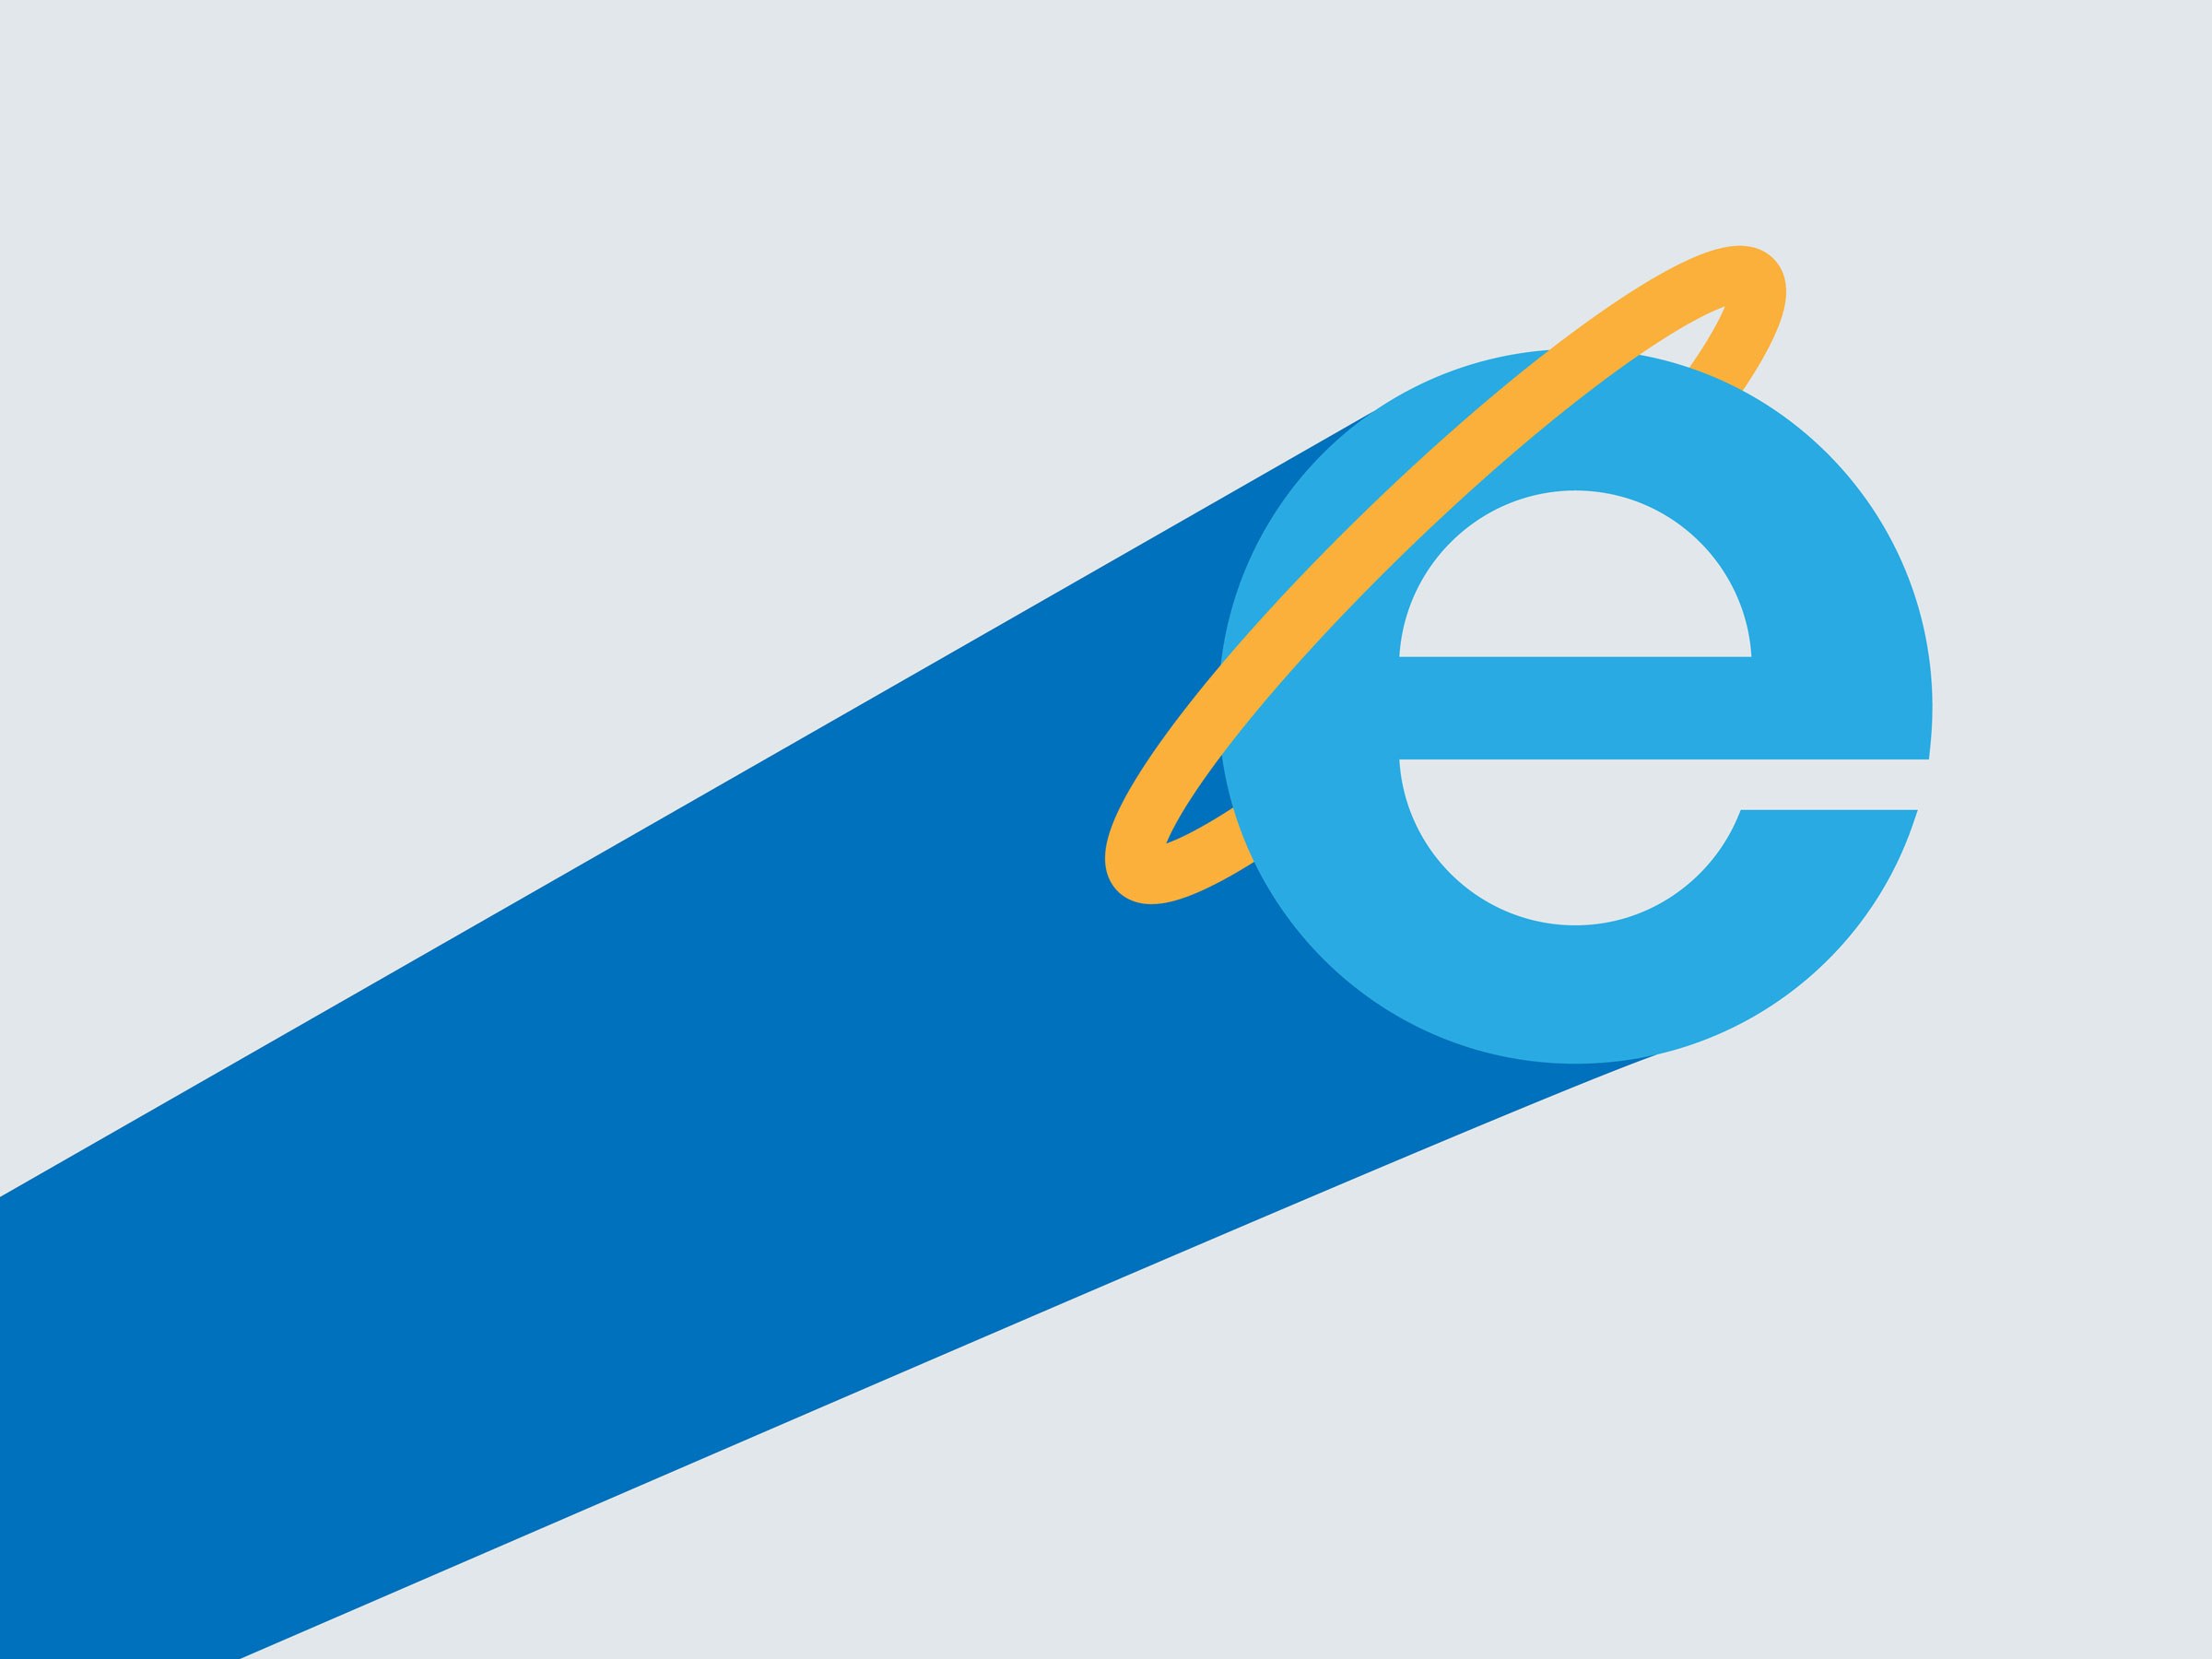 El navegador Microsoft Edge, preparat per a ús empresarial i empresarial, revela un full de ruta revelat